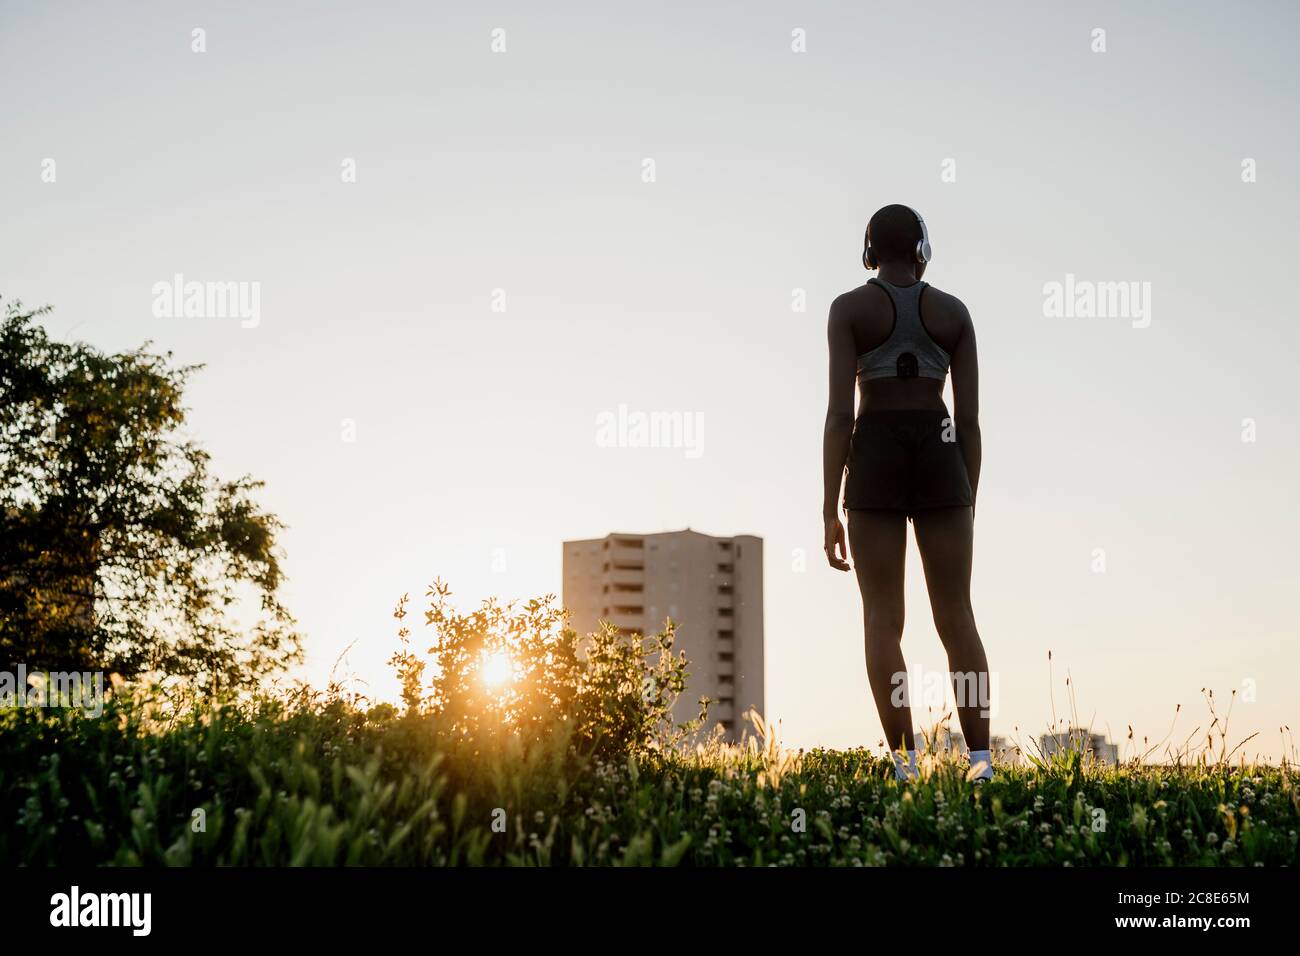 Jeune femme debout sur terre herbeuse contre ciel clair pendant coucher de soleil Banque D'Images